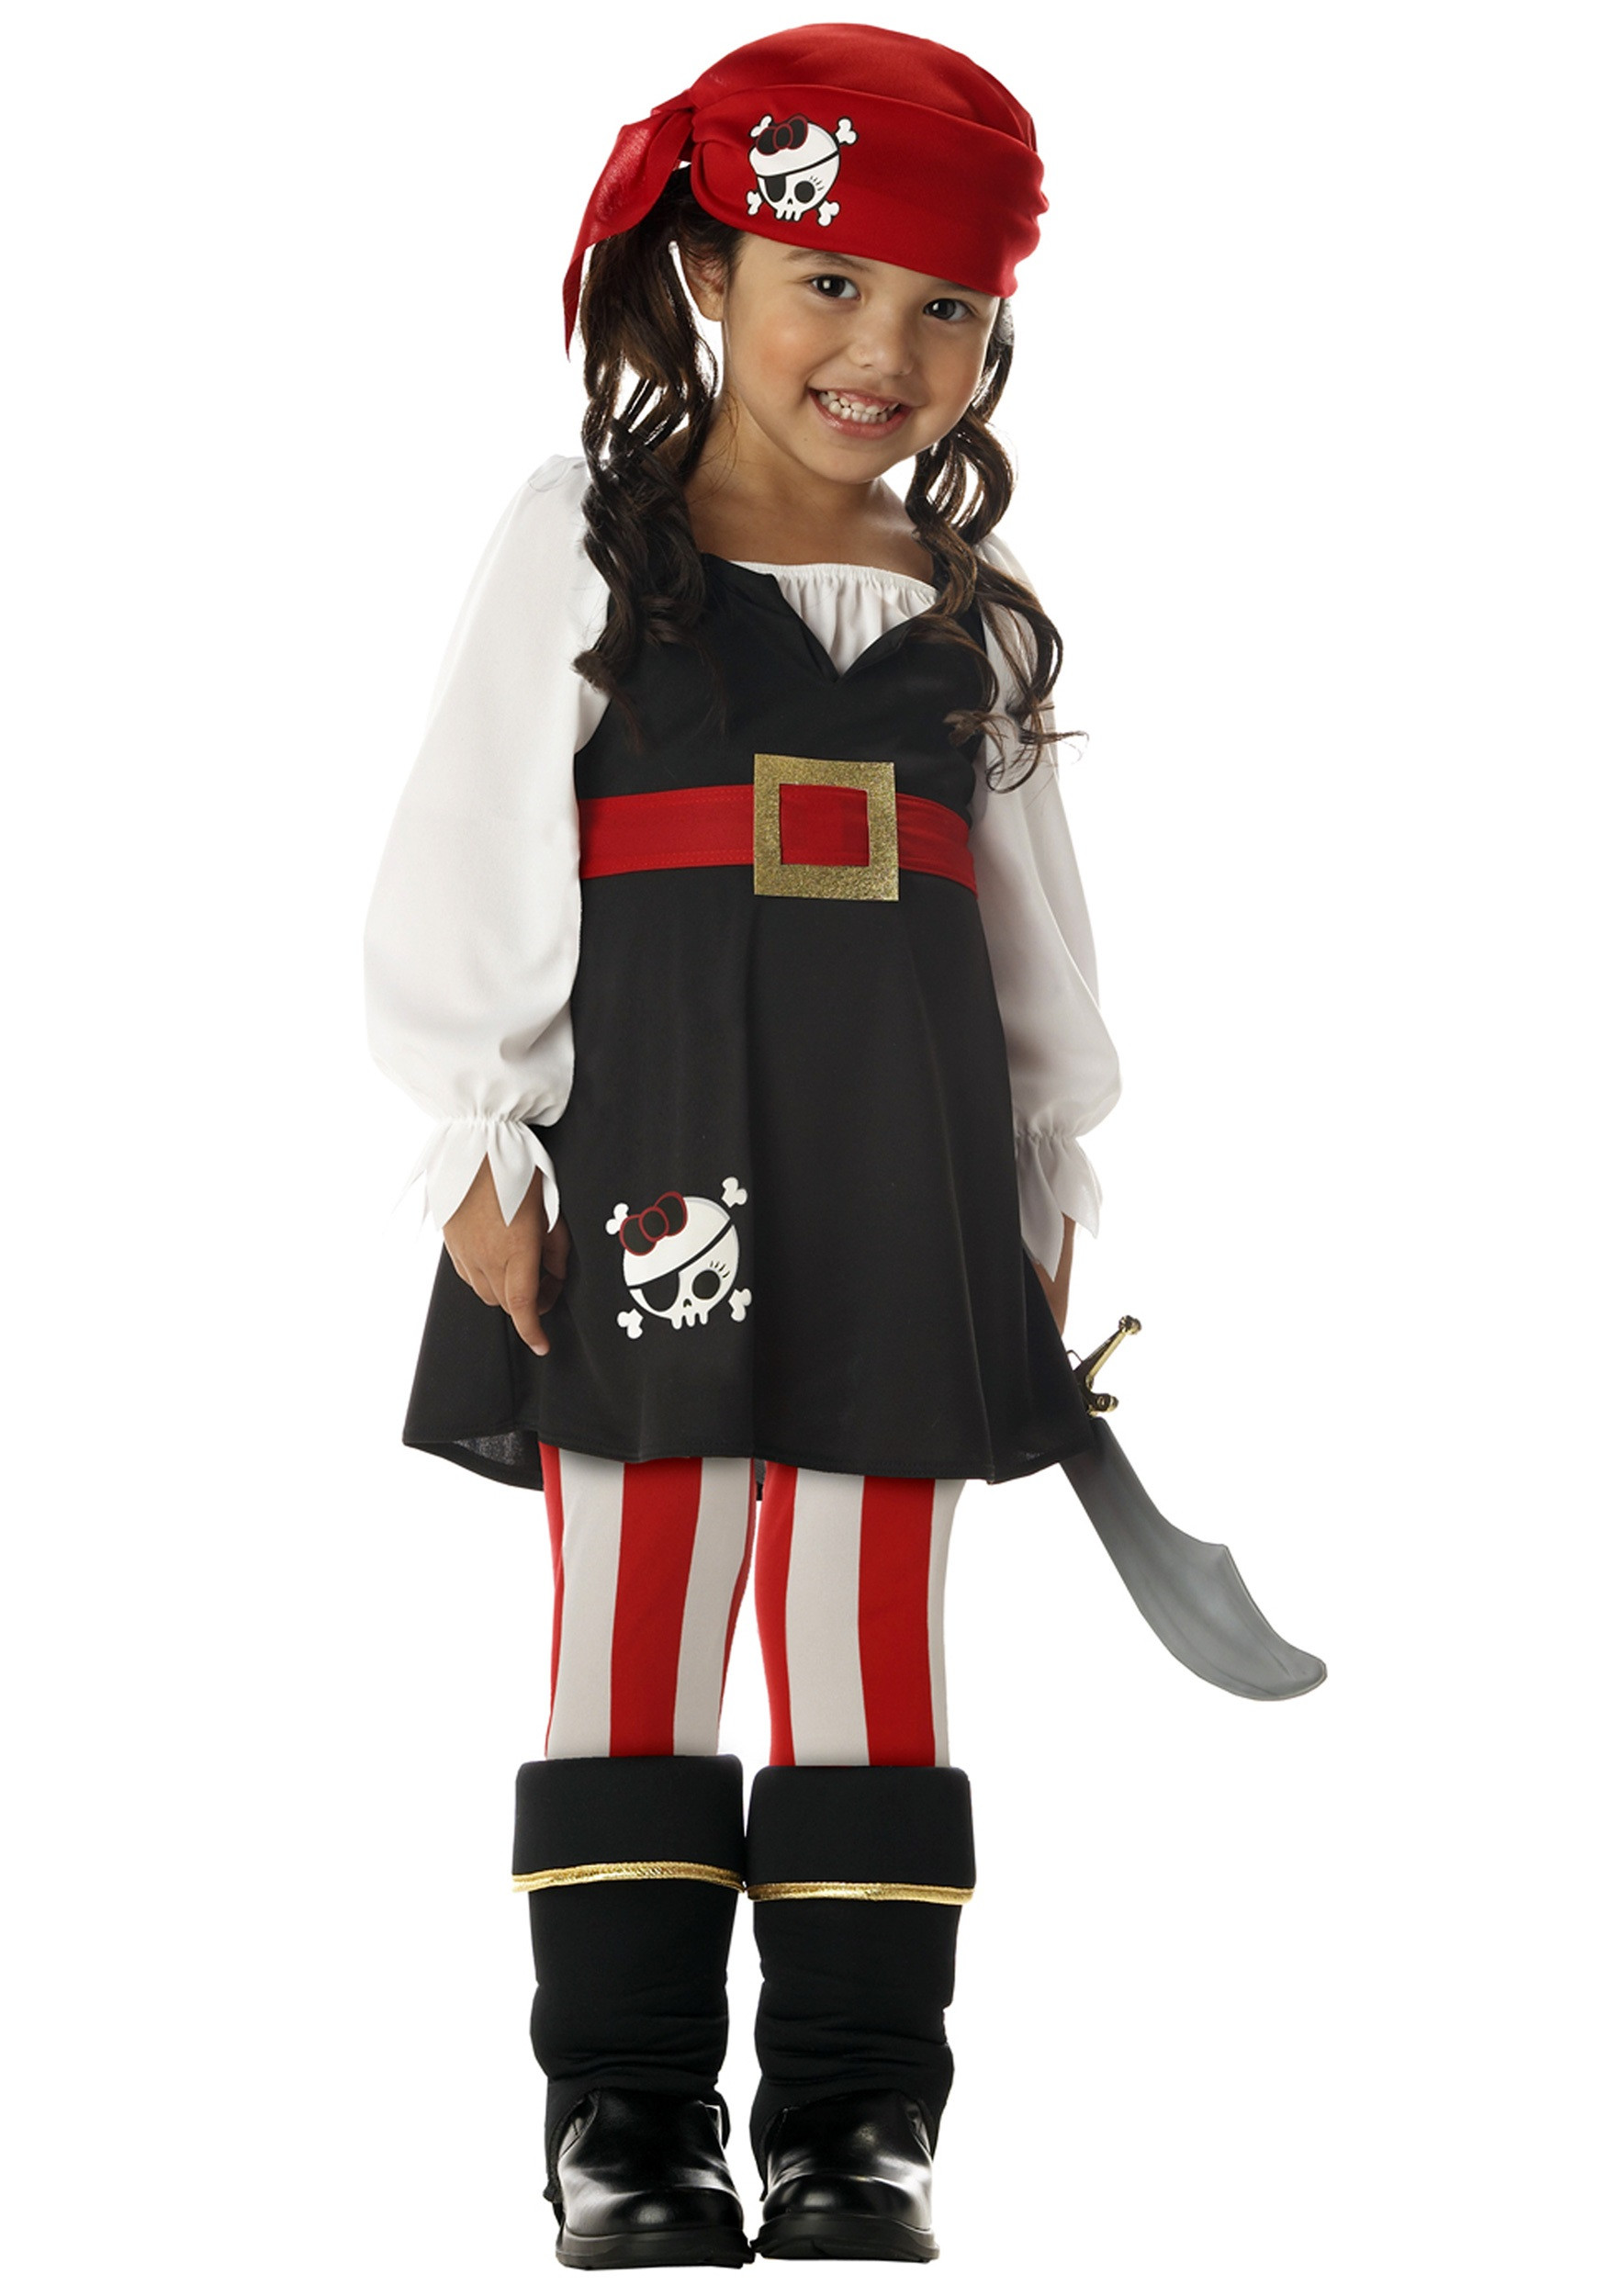 DIY Toddler Pirate Costume
 Toddler Girls Pirate Costume